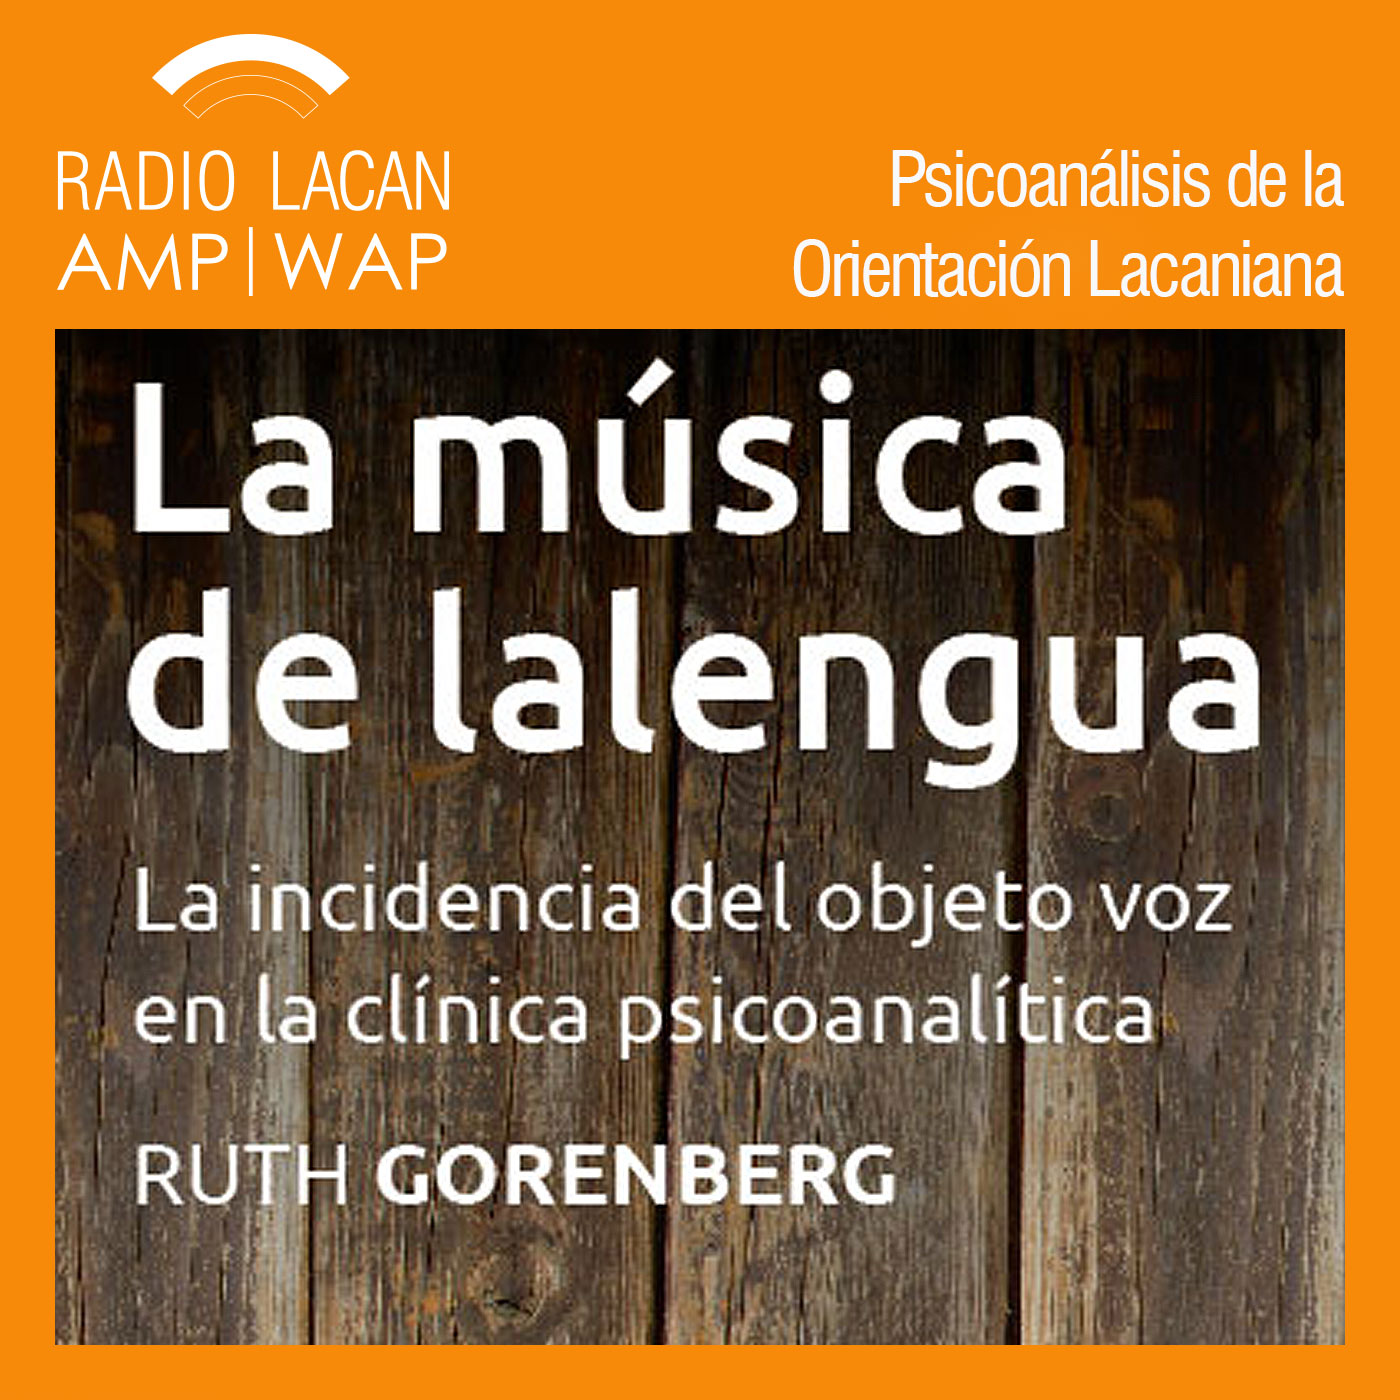 RadioLacan.com | Ecos de Barcelona: Presentación del libro: La música de lalengua, de Ruth Gorenberg en la Biblioteca del C